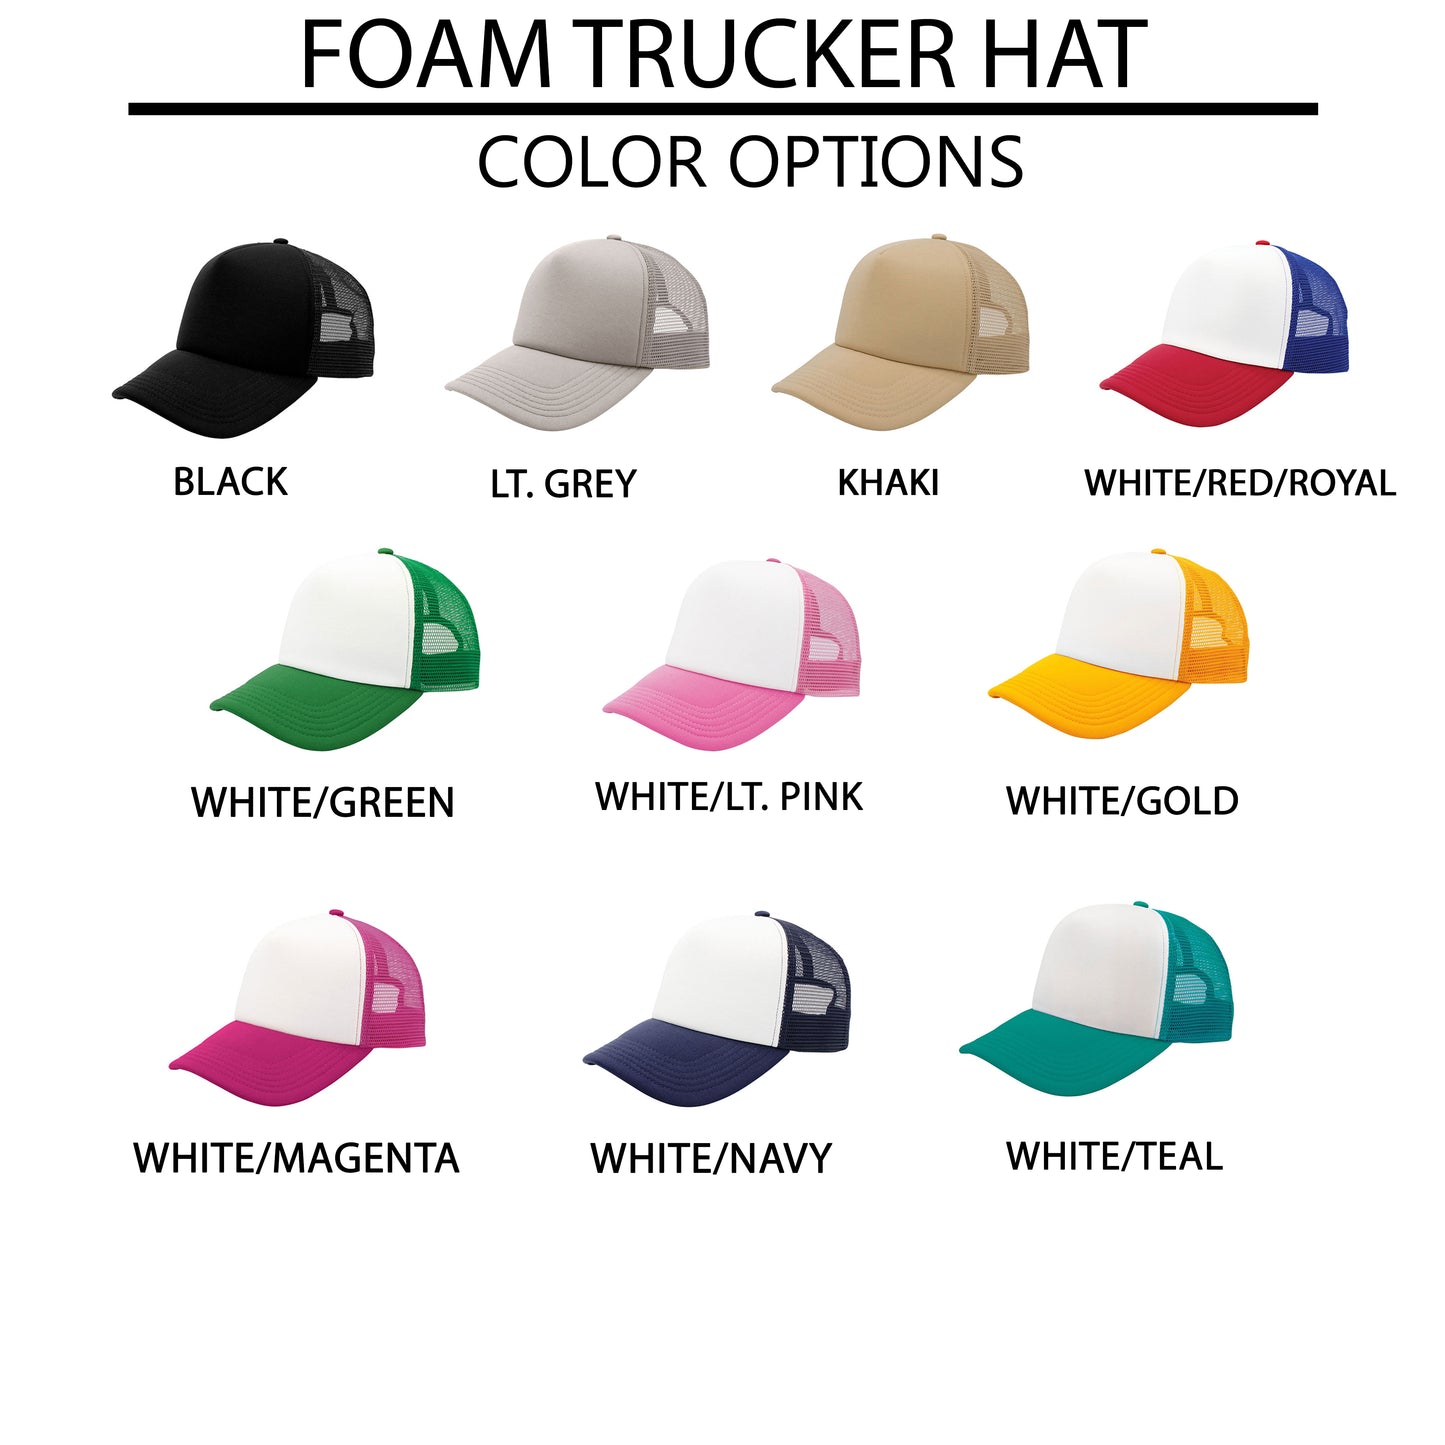 Rest Arms of Jesus | Foam Trucker Hat